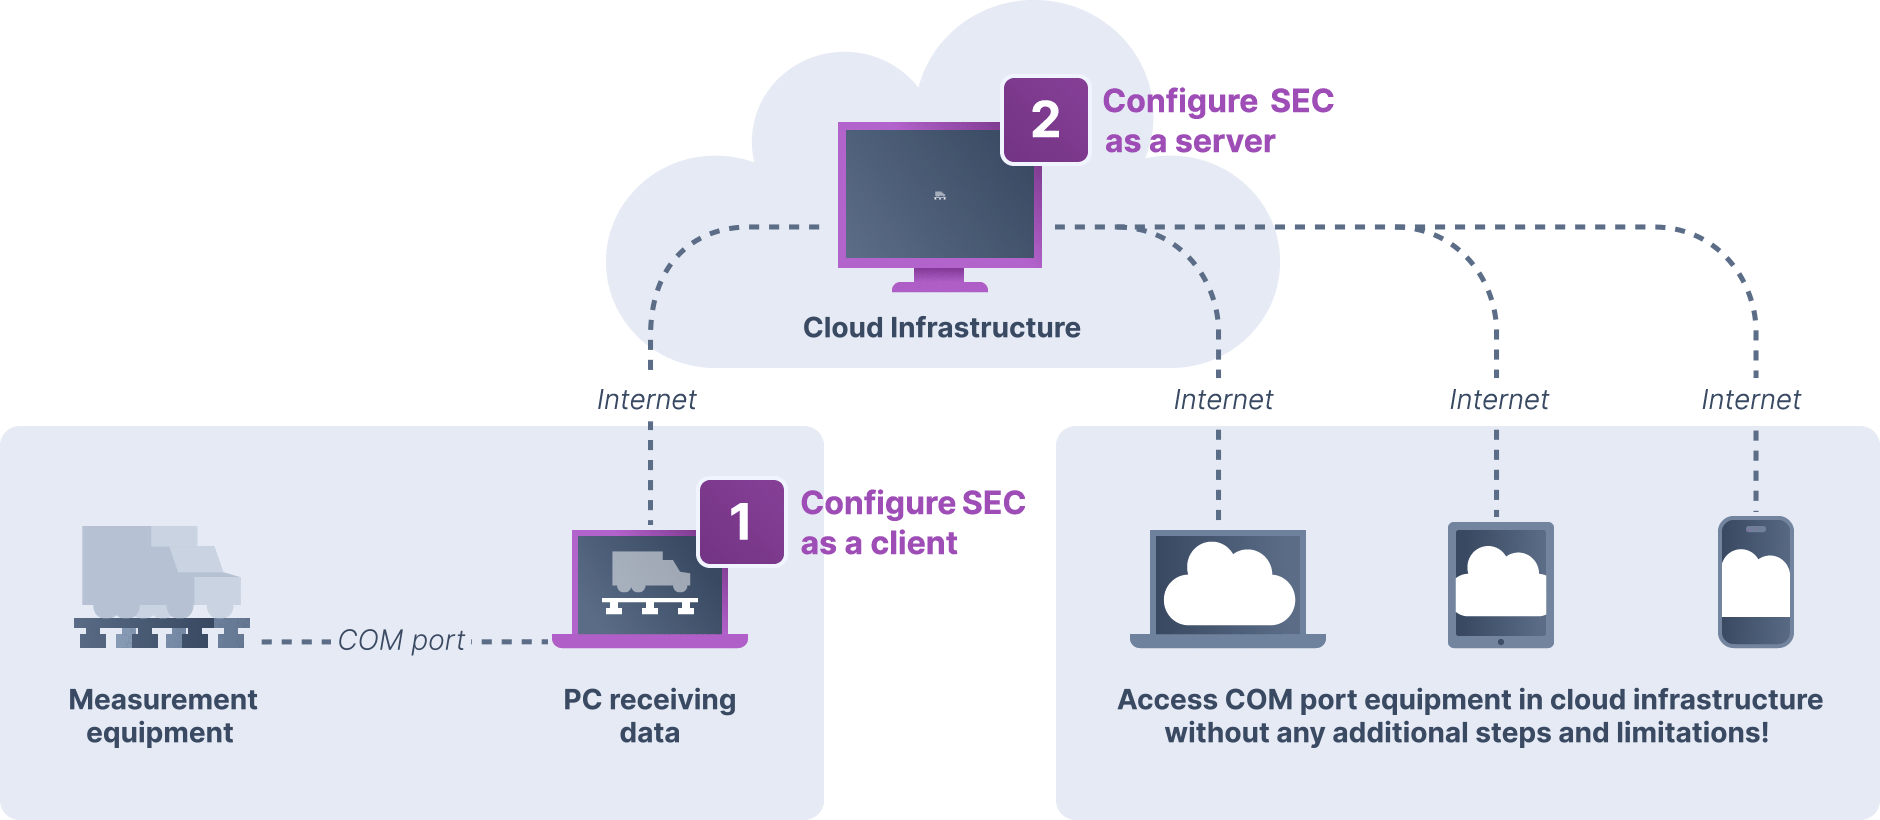 Obtenga información sobre el software Serial over LAN y cómo puede usarlo en la infraestructura de la nube.